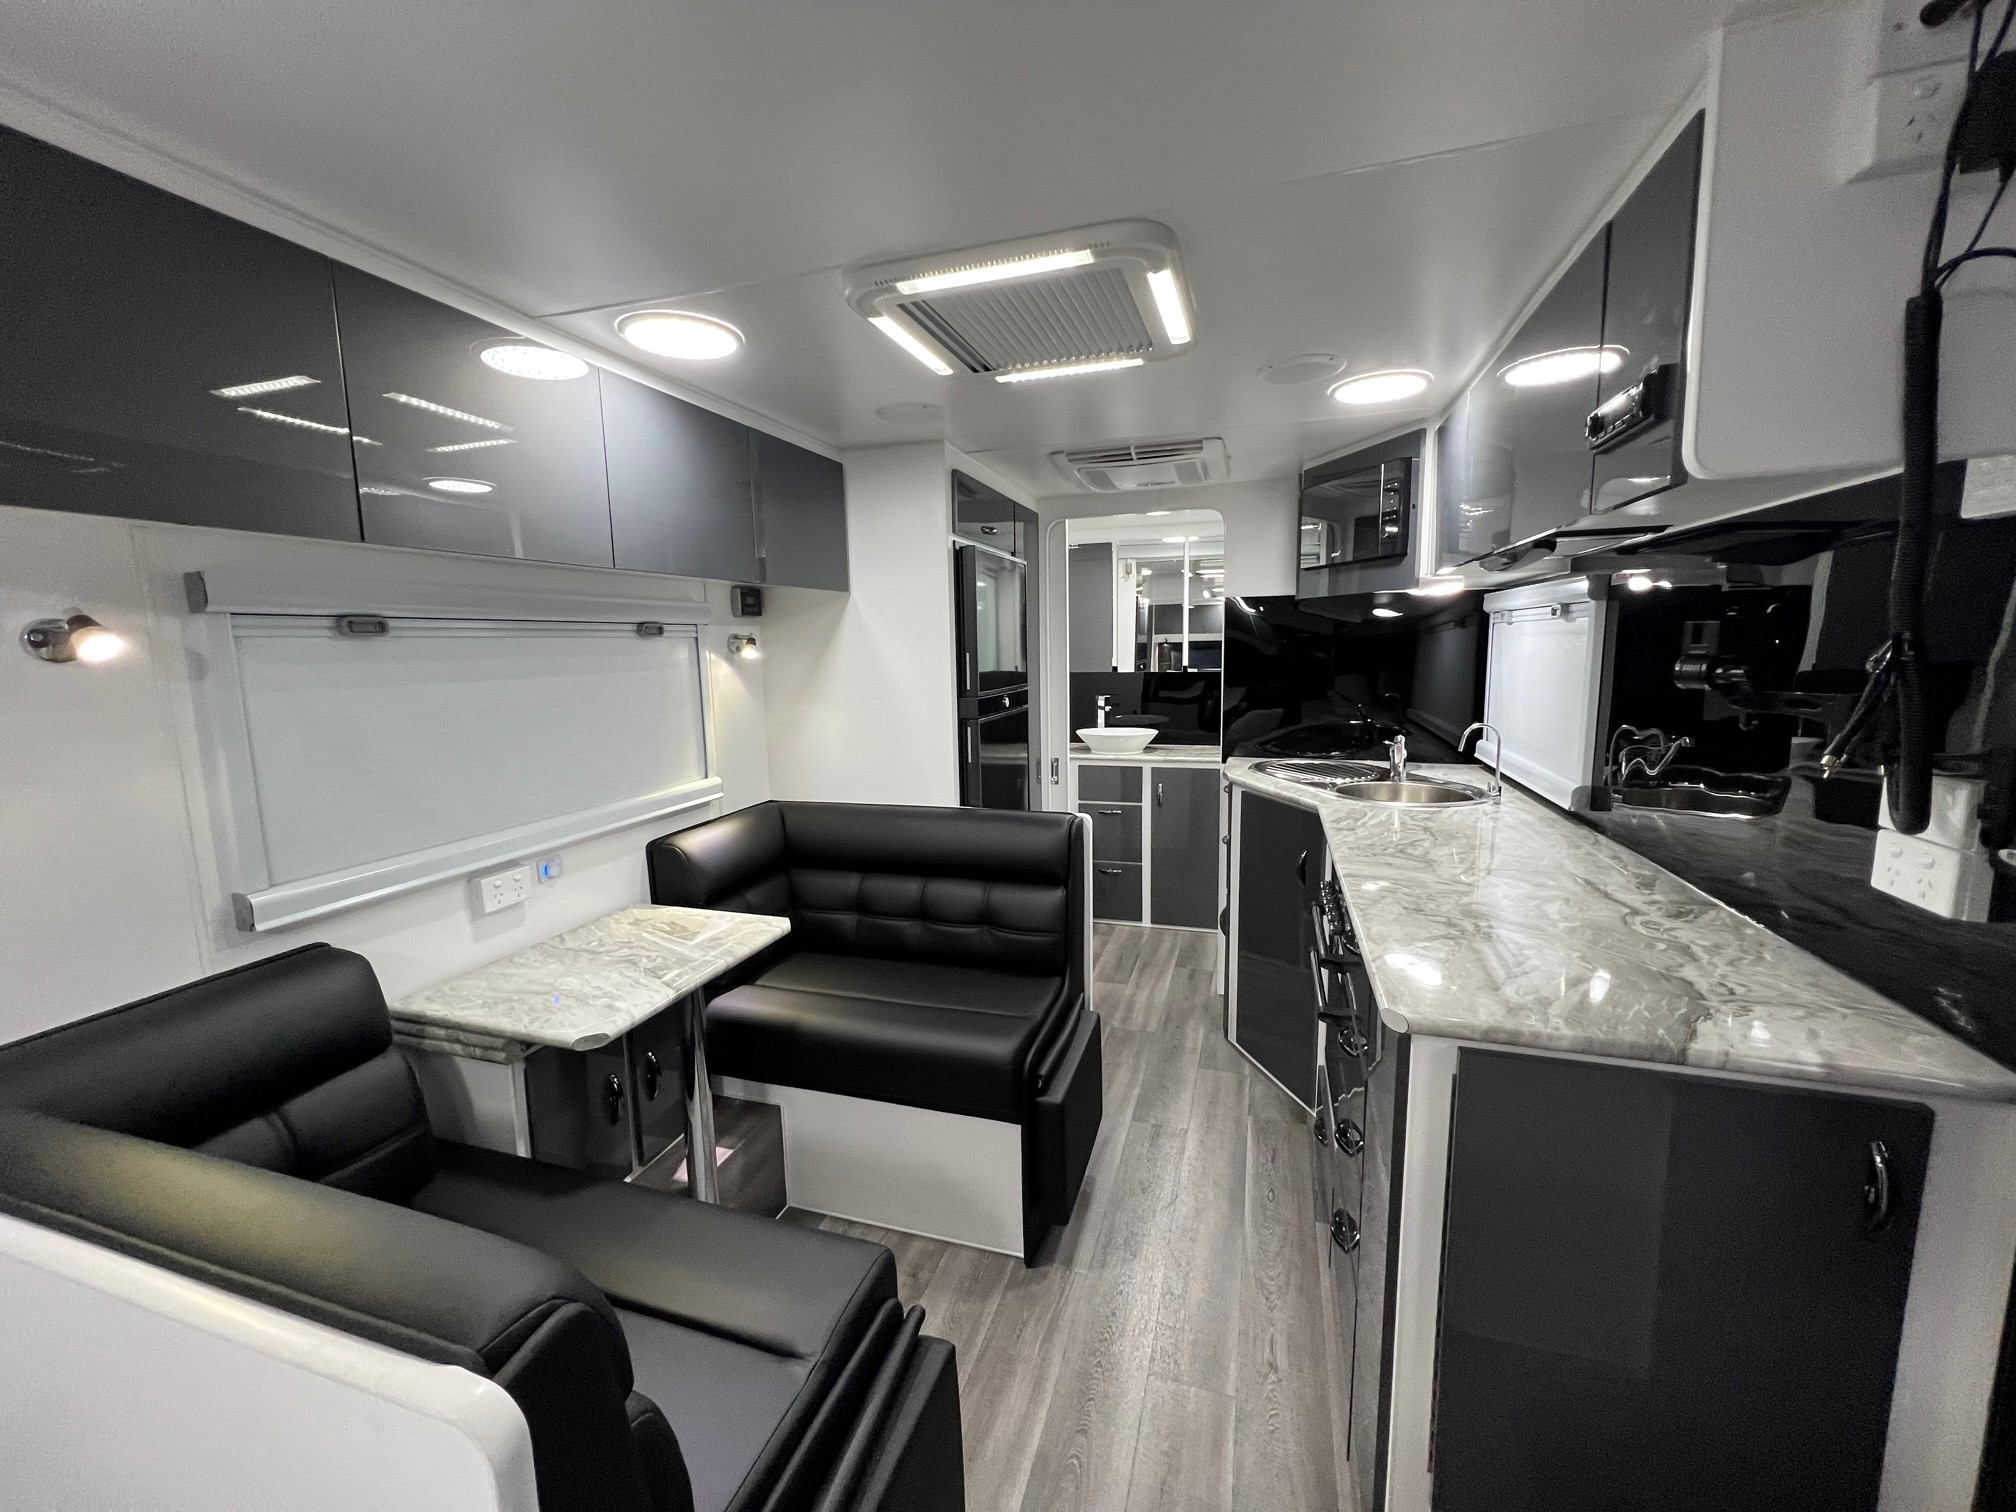 2022 Blue Sky Splendour 21ft Angled kitchen